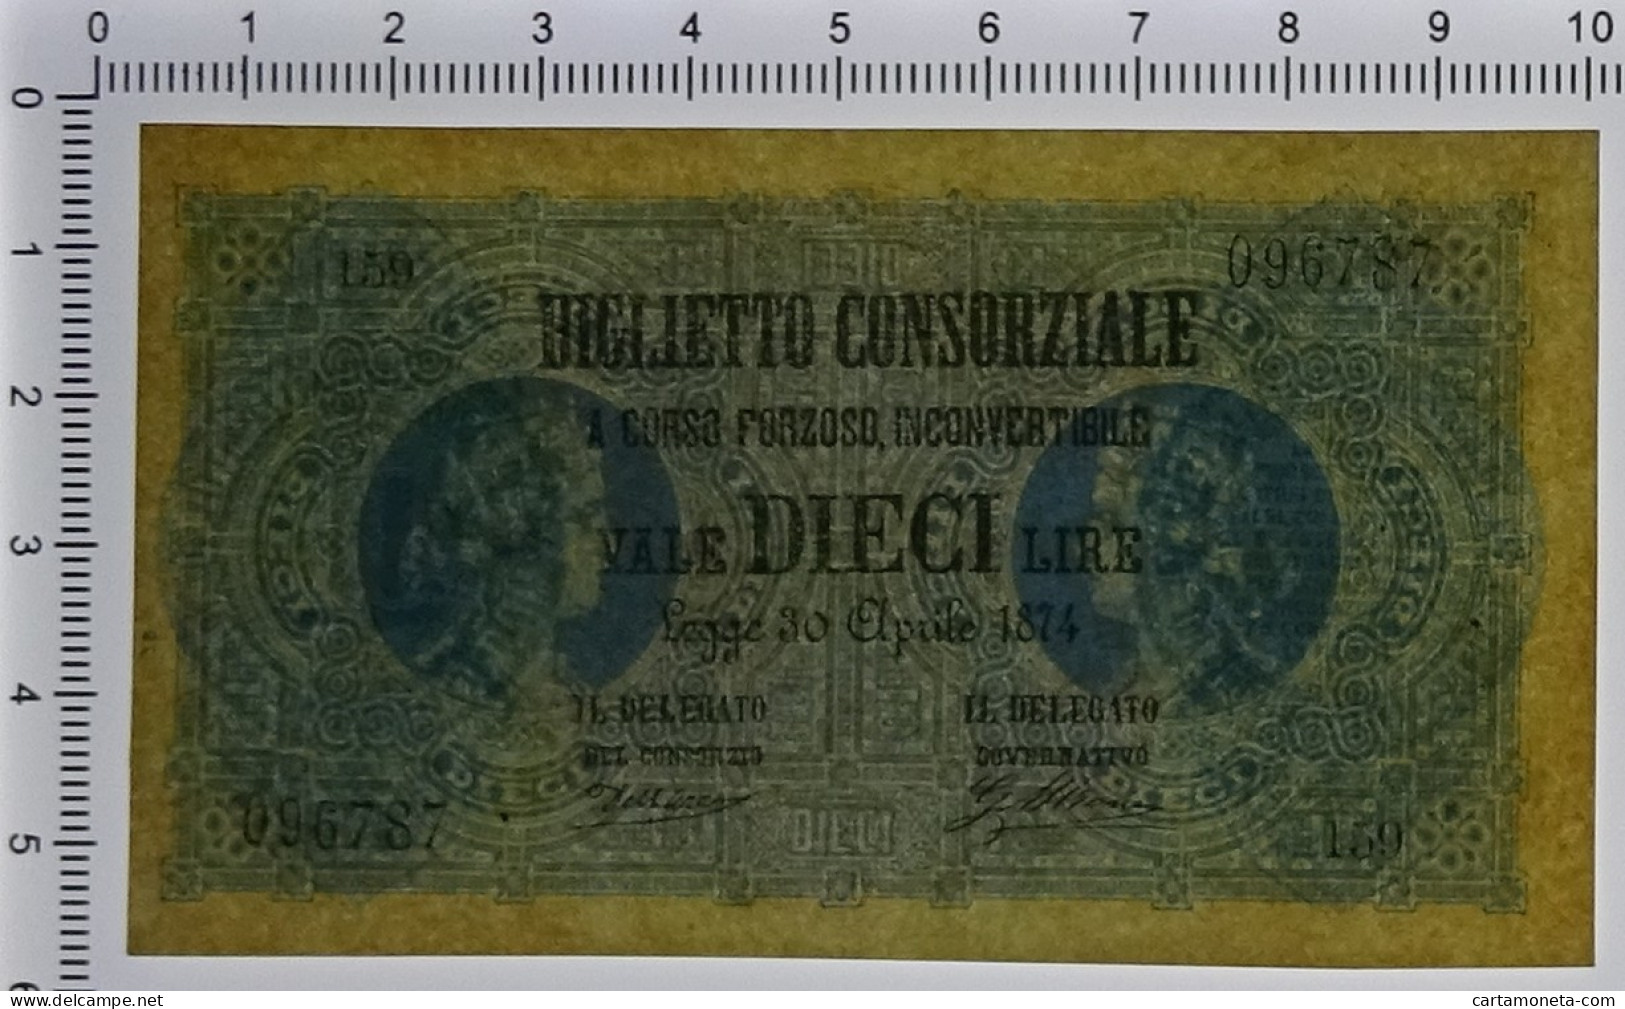 10 LIRE BIGLIETTO CONSORZIALE REGNO D'ITALIA 30/04/1874 QFDS - Biglietto Consorziale